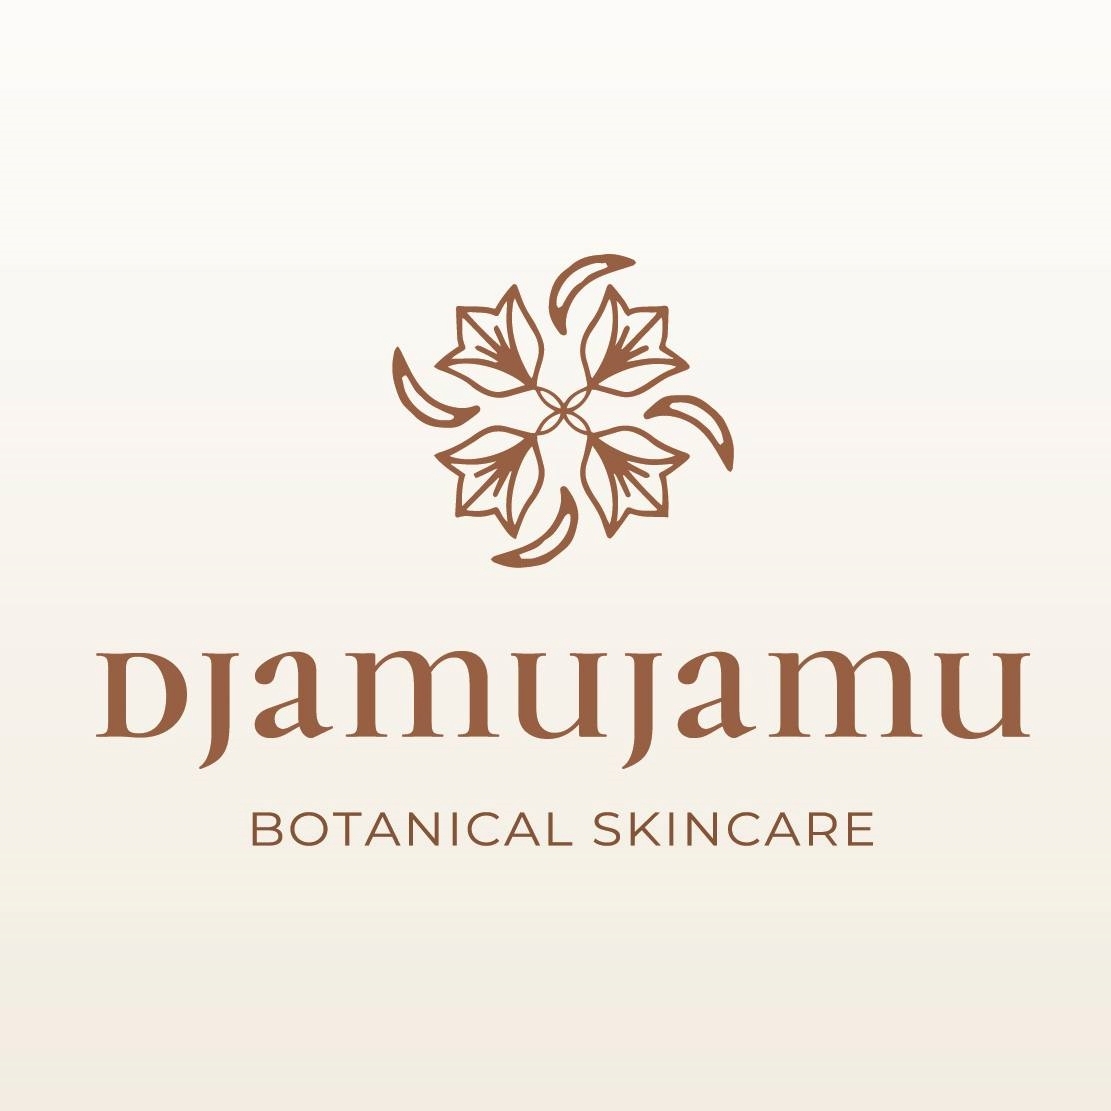 Djamujamu Botanical Skincare Profile Picture